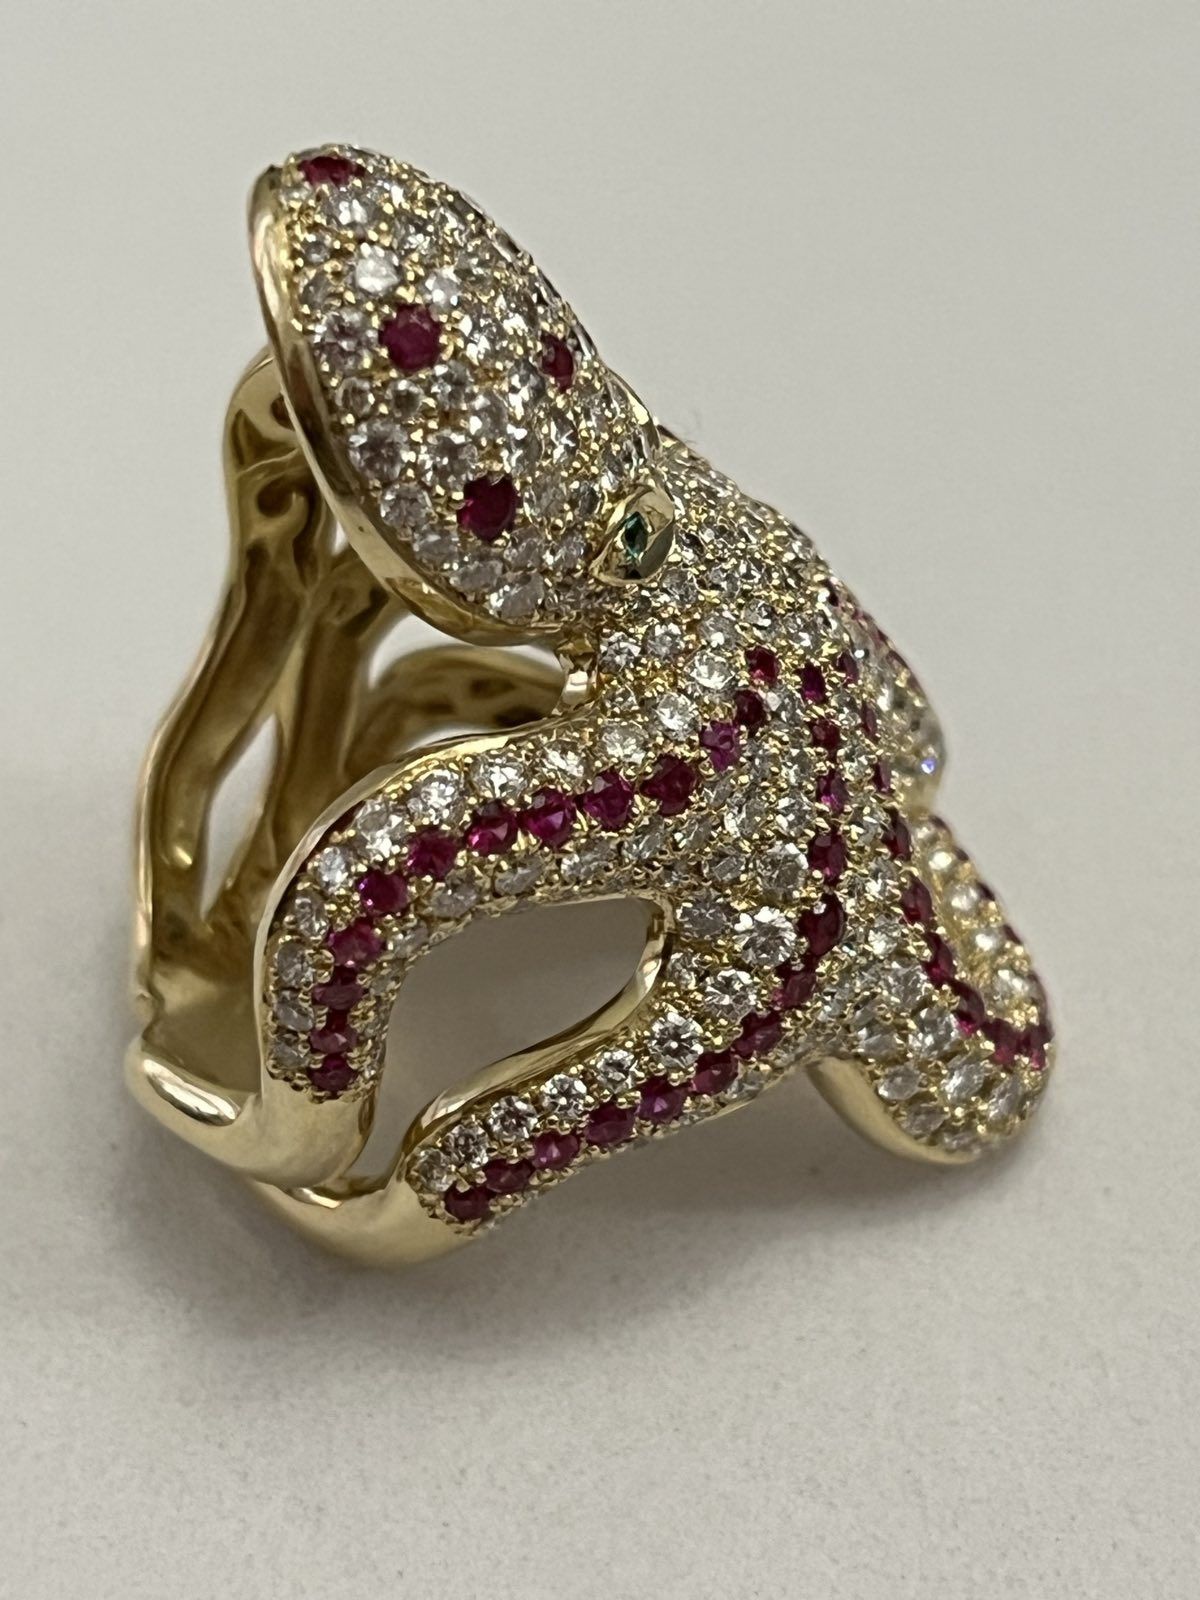 Золотое кольцо  Осьминог 5.23 карат. Бриллианты, Рубины, Изумруды.